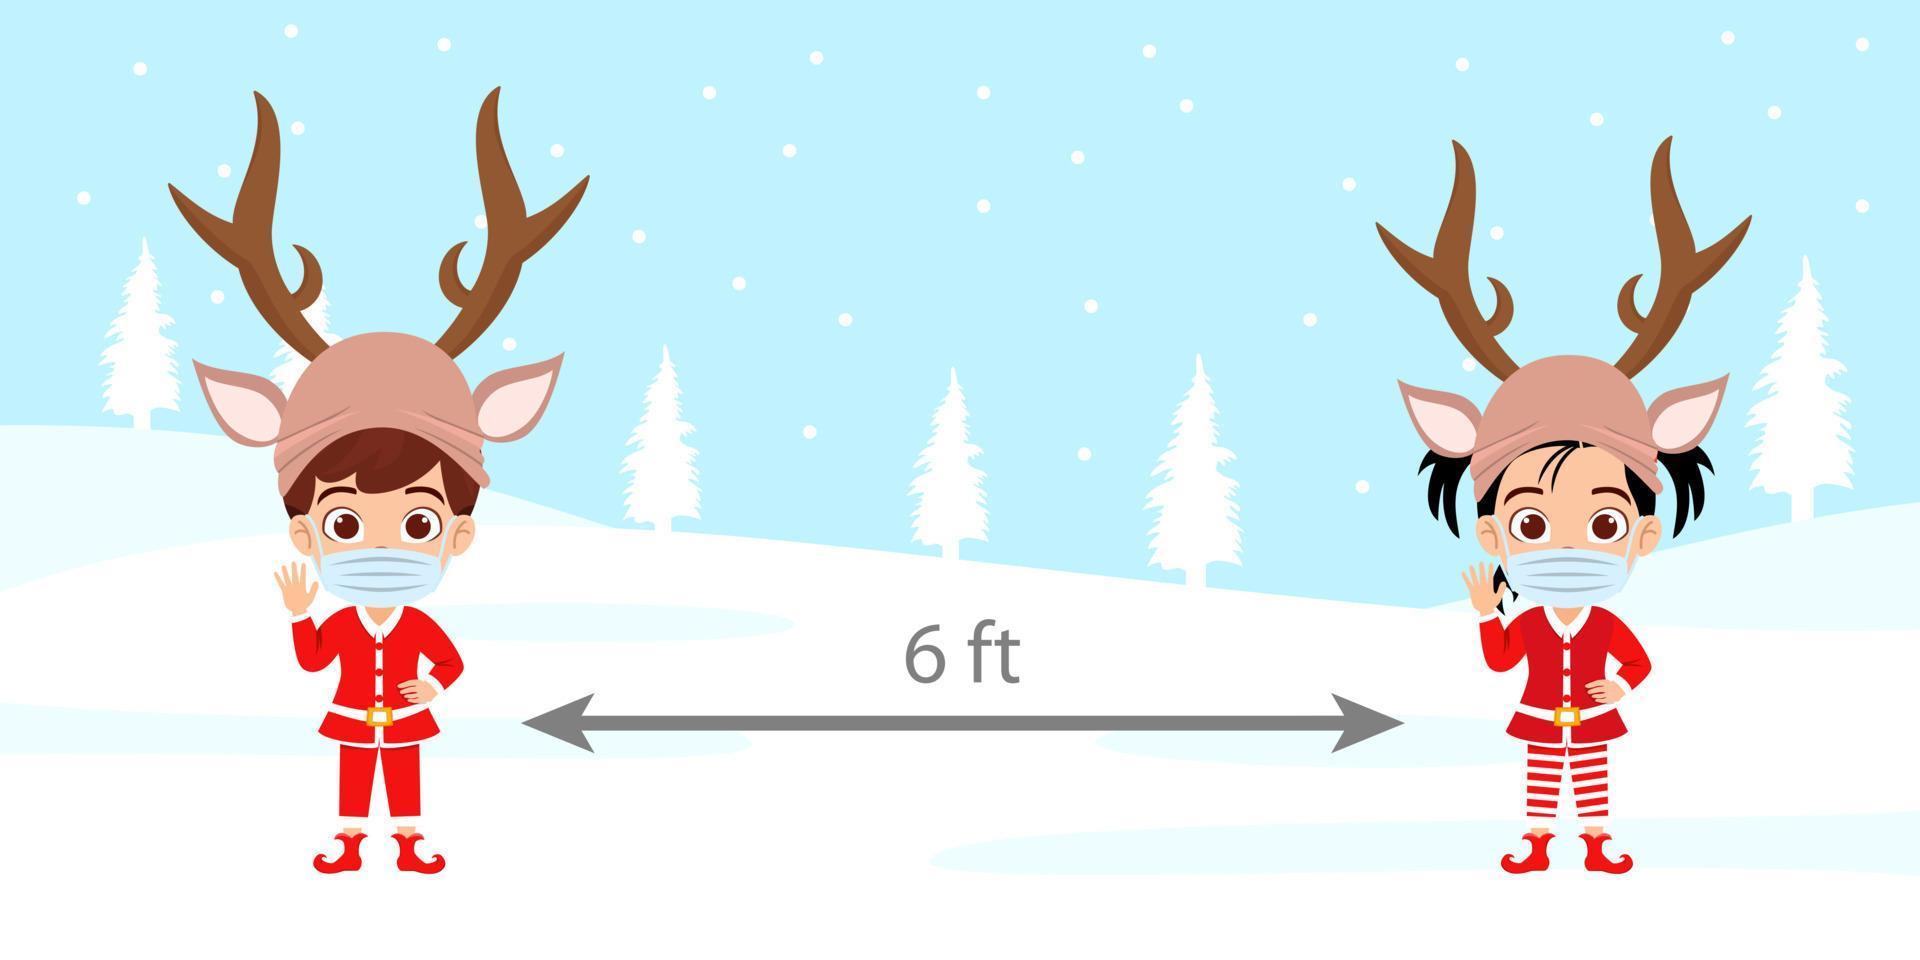 süßer schöner Kinderjunge und -mädchencharakter, der auf Schneefeld steht, der mit Weihnachtsoutfit und Gesichtsmaske und Rentierhut fällt und 6 Fuß soziale Distanz hält vektor